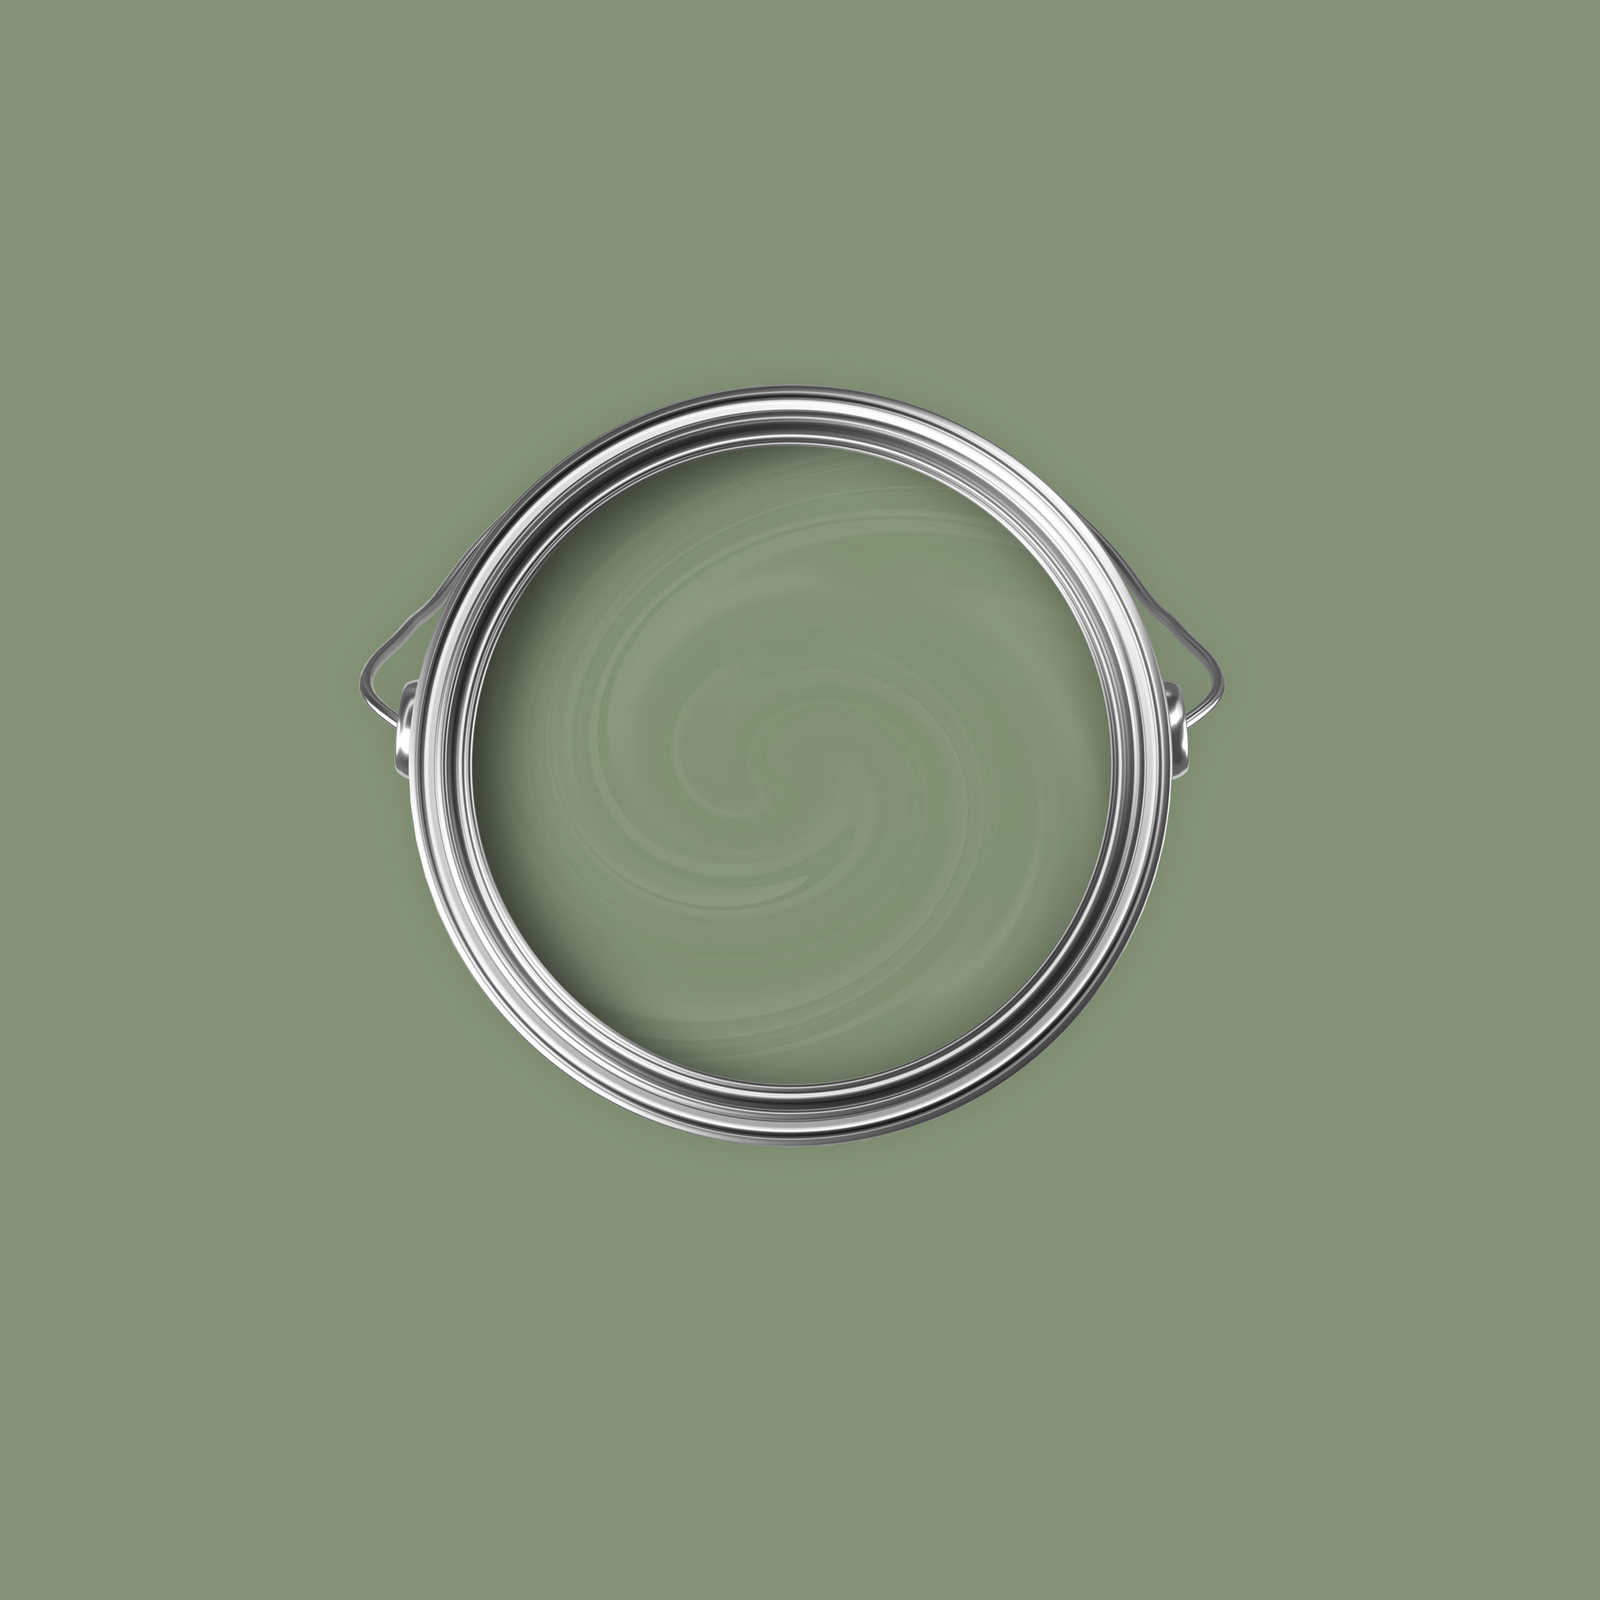             Premium Wandfarbe natürliches Olivgrün »Gorgeous Green« NW503 – 2,5 Liter
        